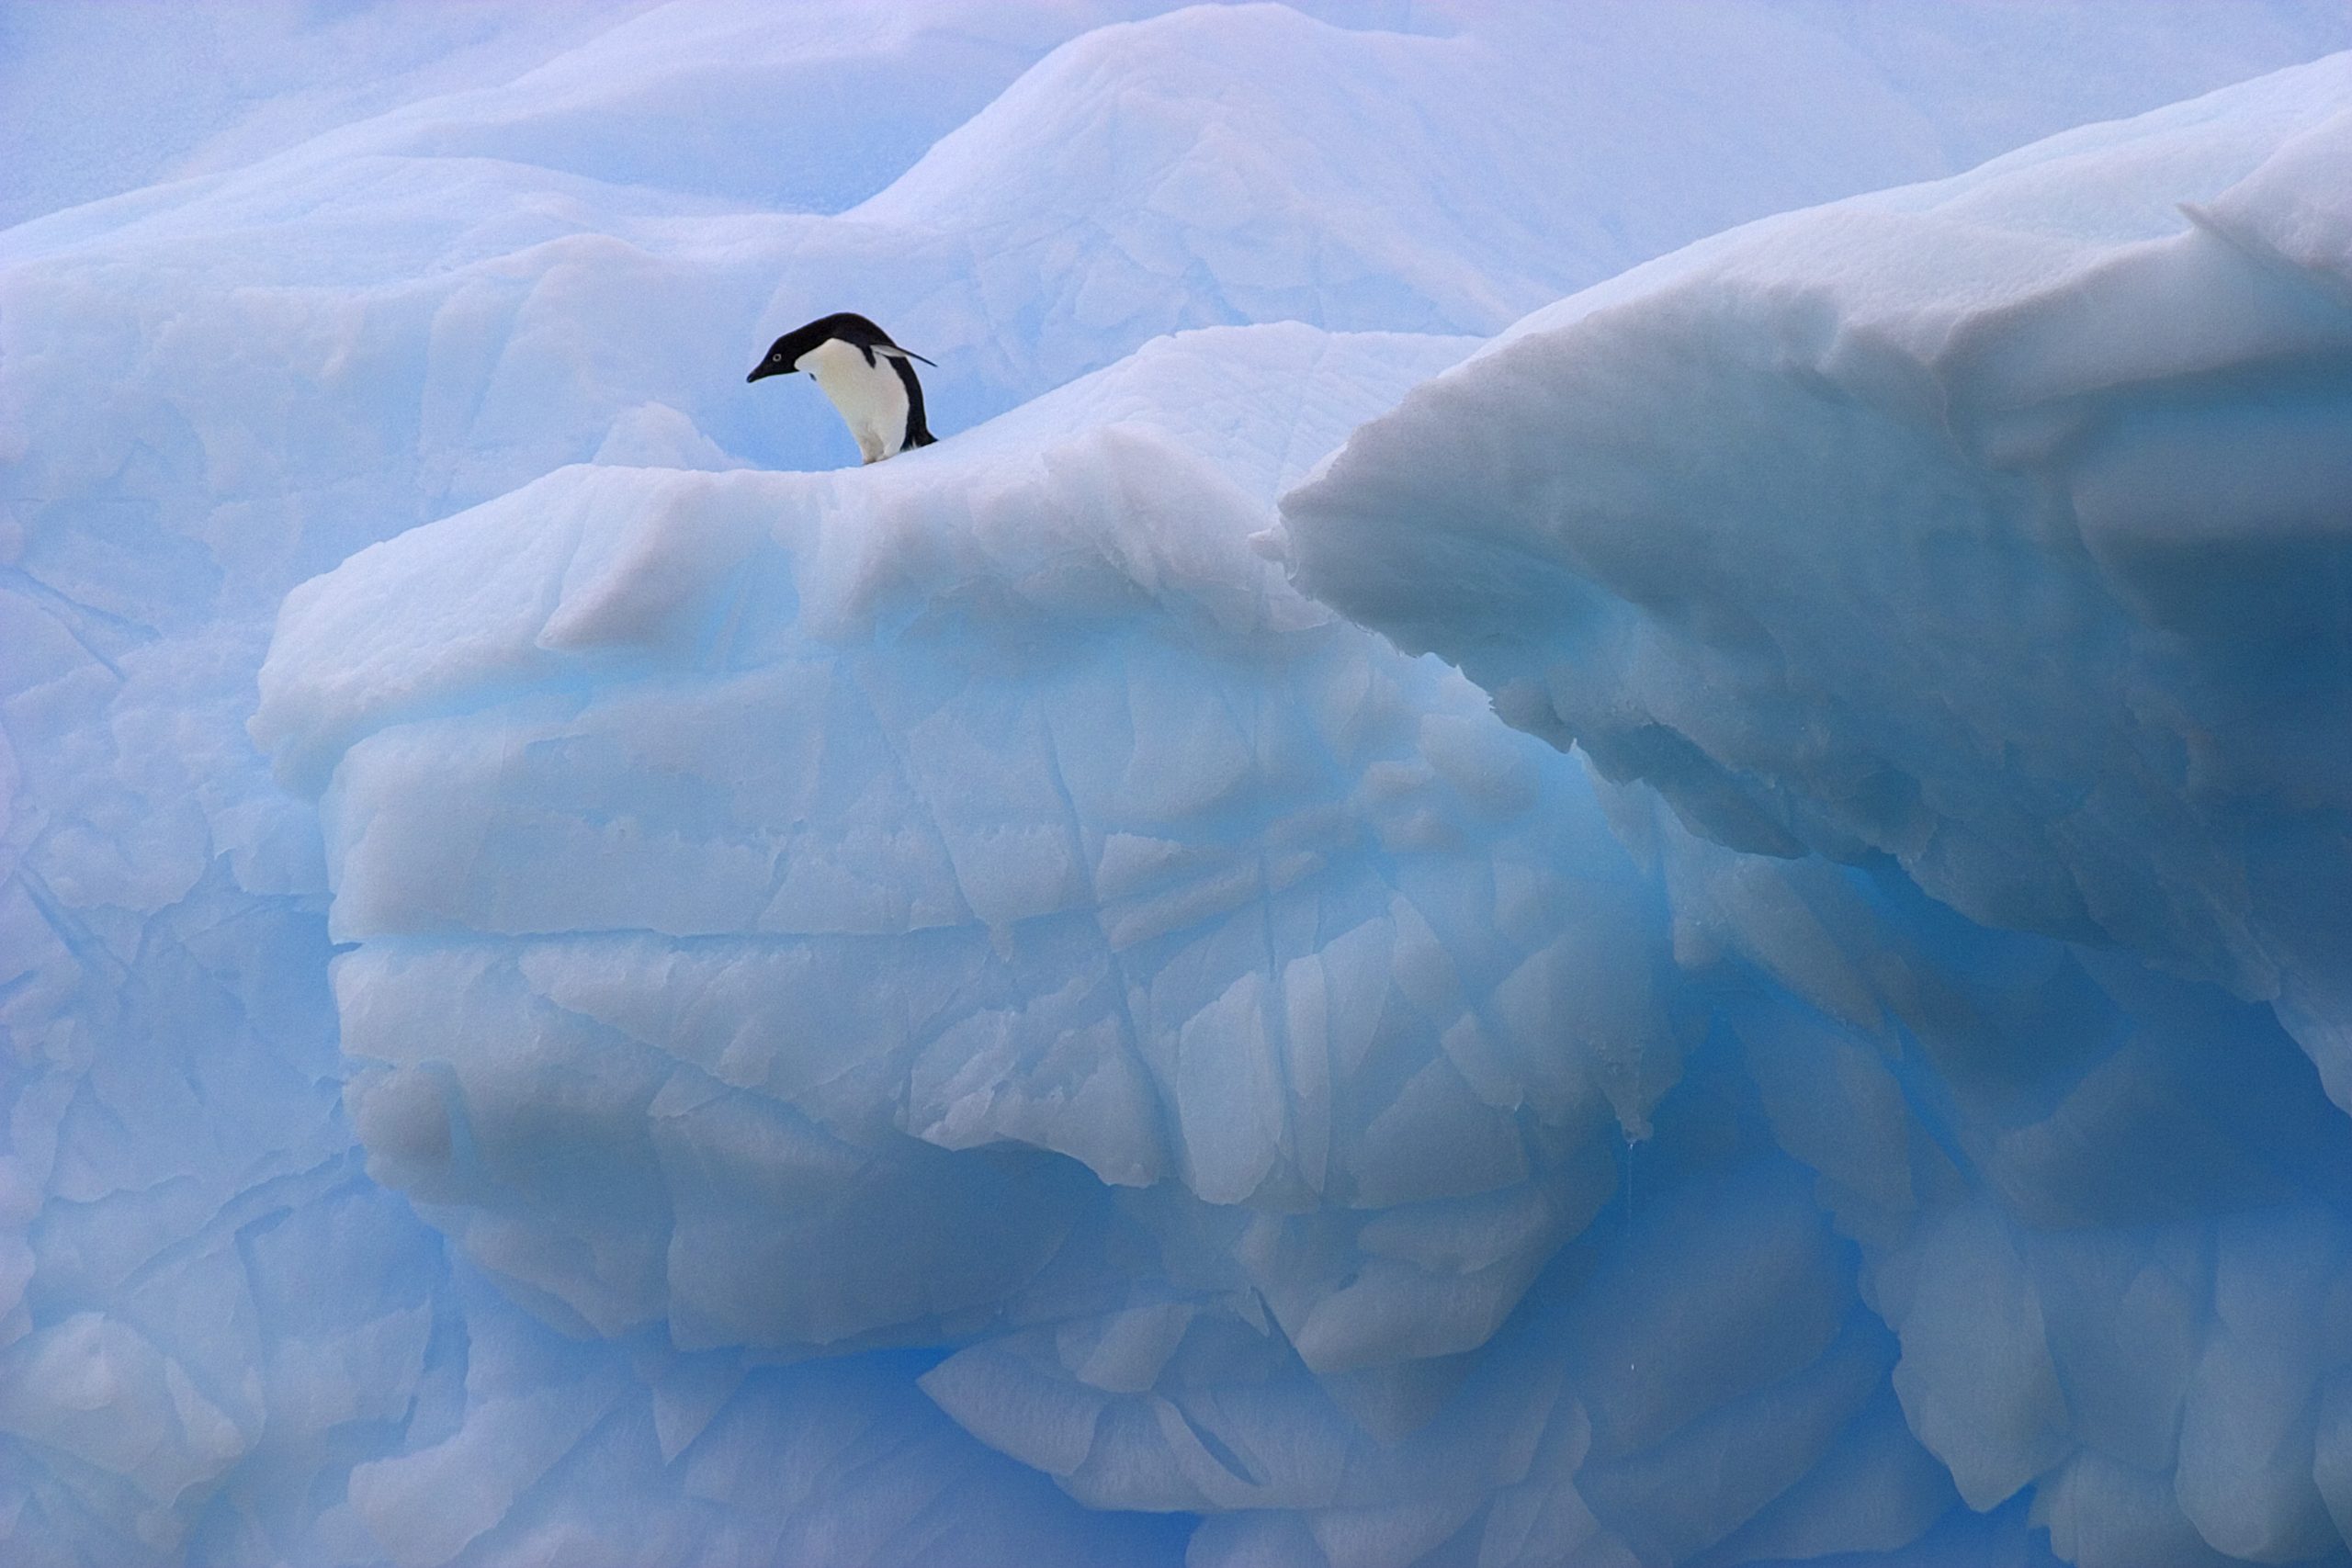 Antarctica: Land of Frozen Beauty